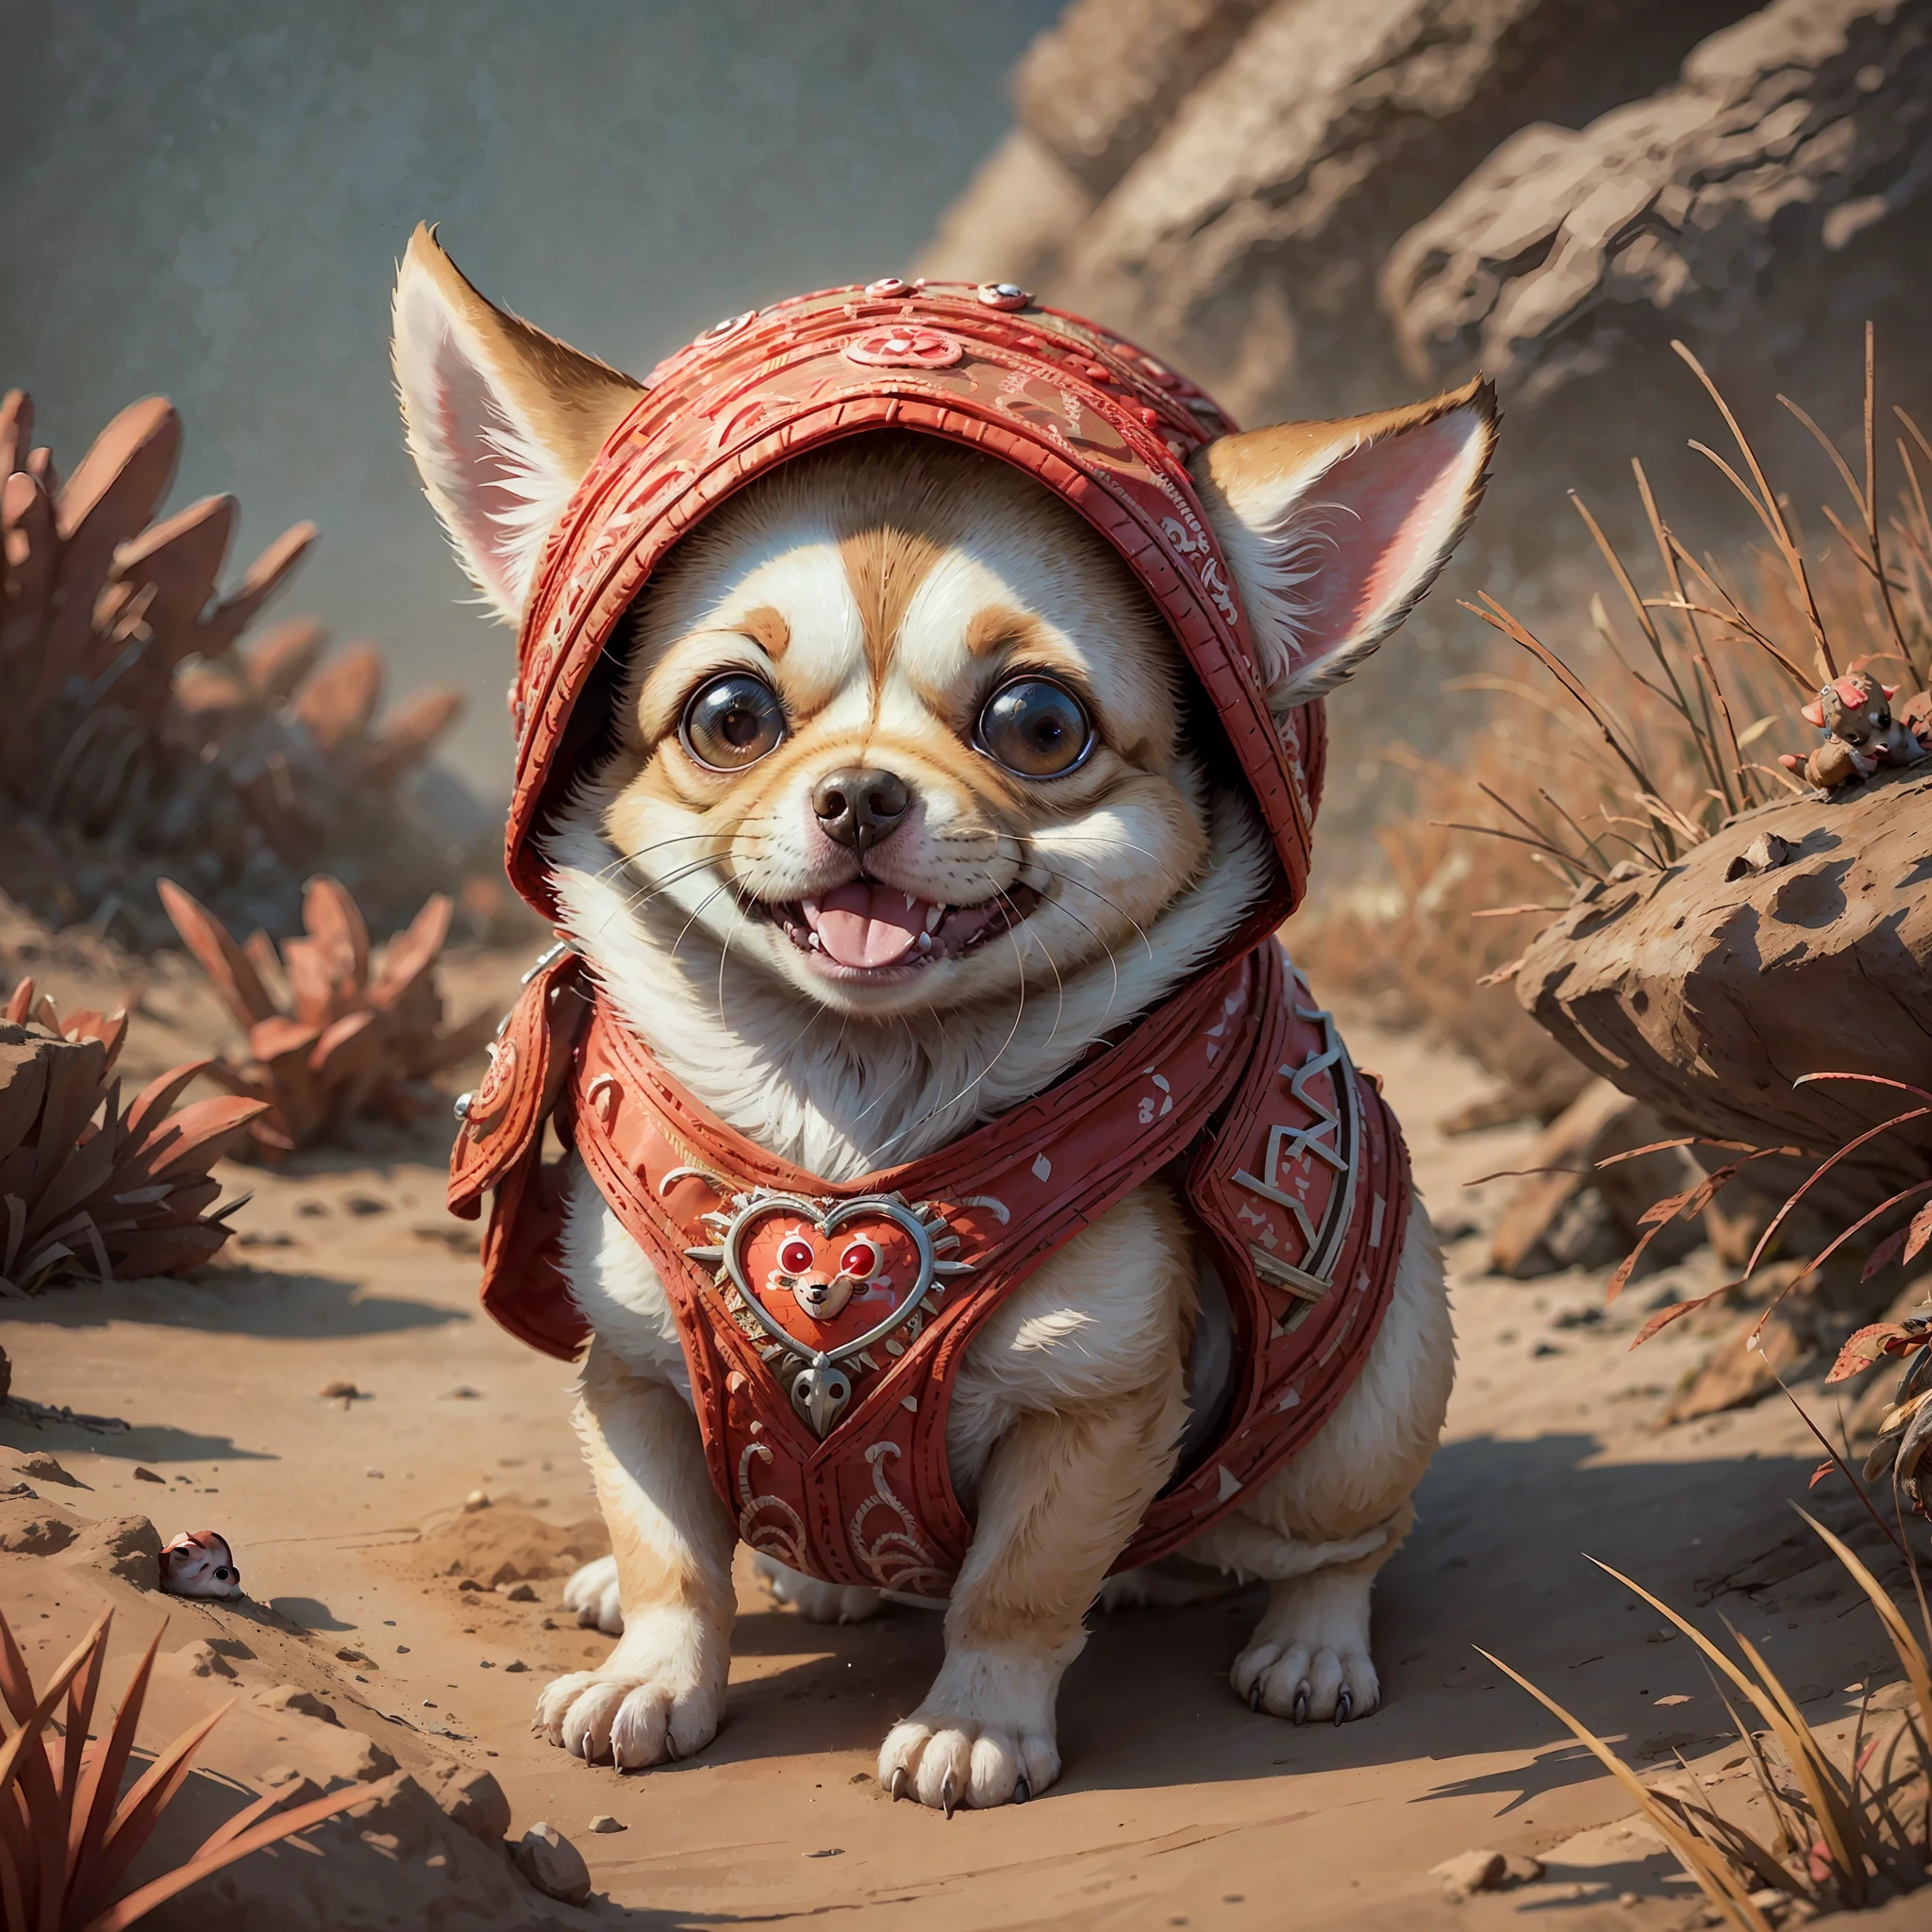 a (Niedlich:1.3) Chihuahua trägt ein (Niedlich:1.6)roter Bau, (komplizierte Details), HDR, (komplizierte Details, hyperdetailliert:1.2), Kinofoto, vignette, zentriert, octane render, artstation, Lachen,lustig --auto --s2